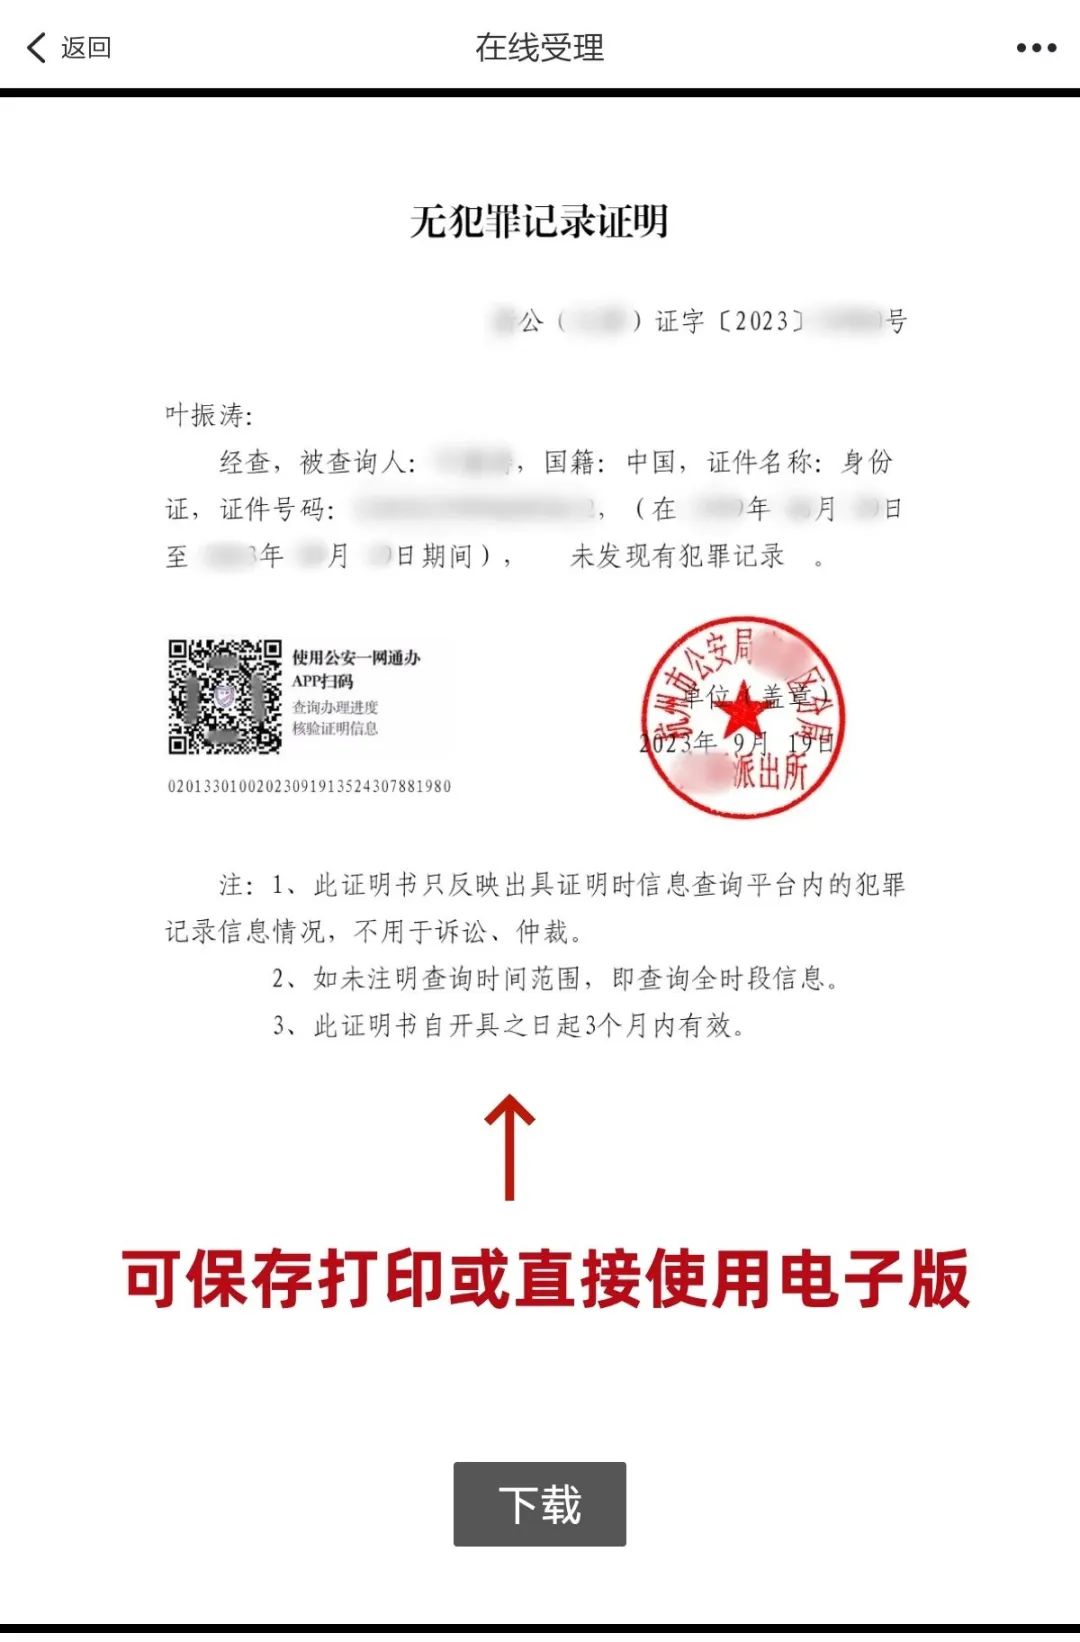 杭州网上办理无犯罪记录证明教程分享